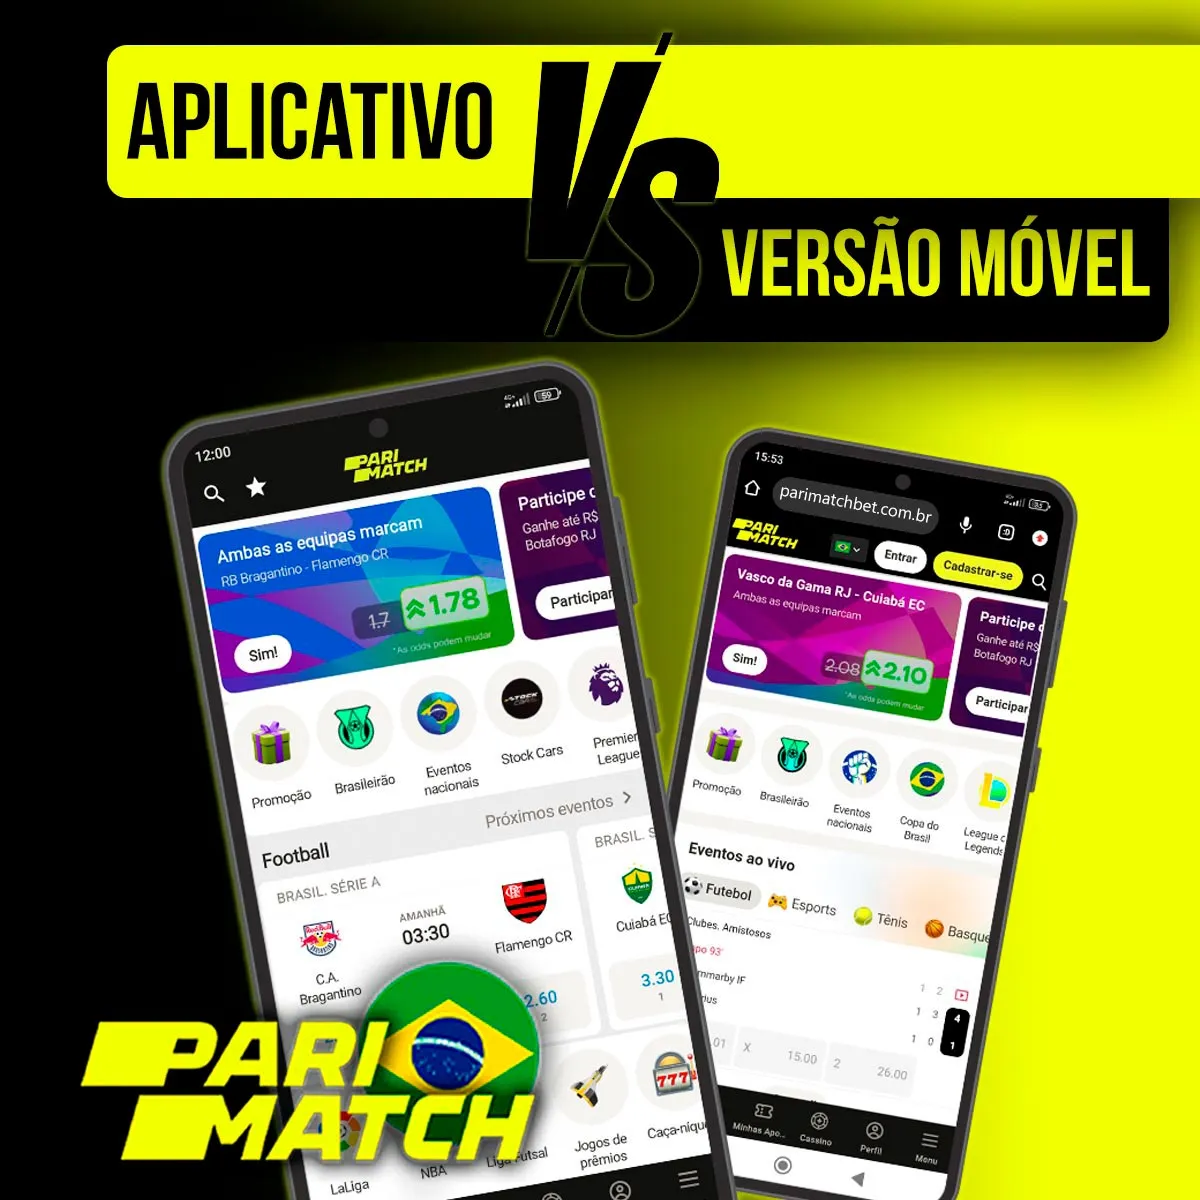 Características e diferenças do aplicativo móvel e da versão móvel da casa de apostas Parimatch no Brasil